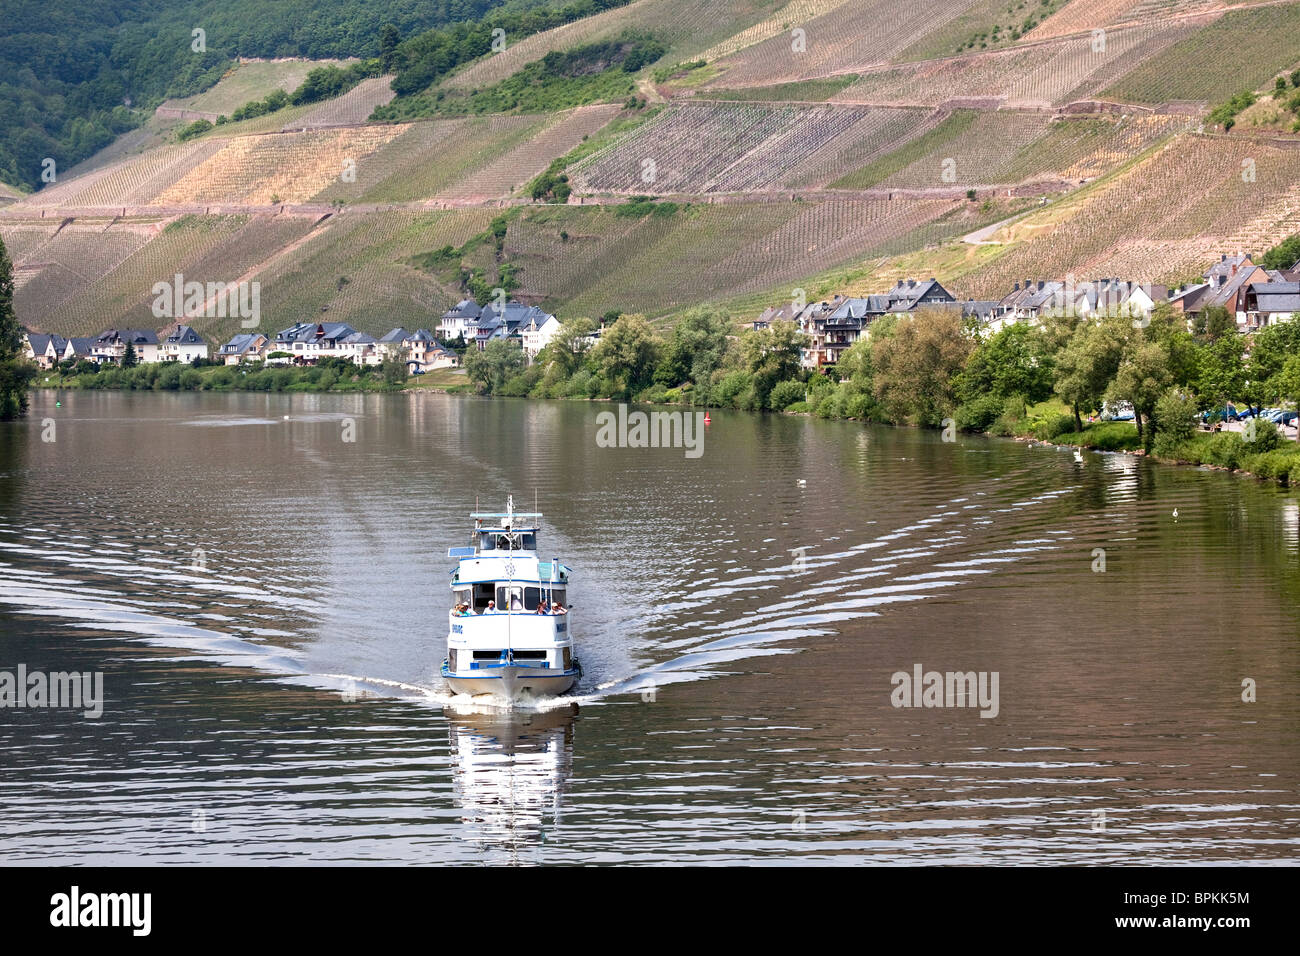 River Cruise Boot an der Mosel in der Nähe von Zell, Moseltal, Deutschland Stockfoto